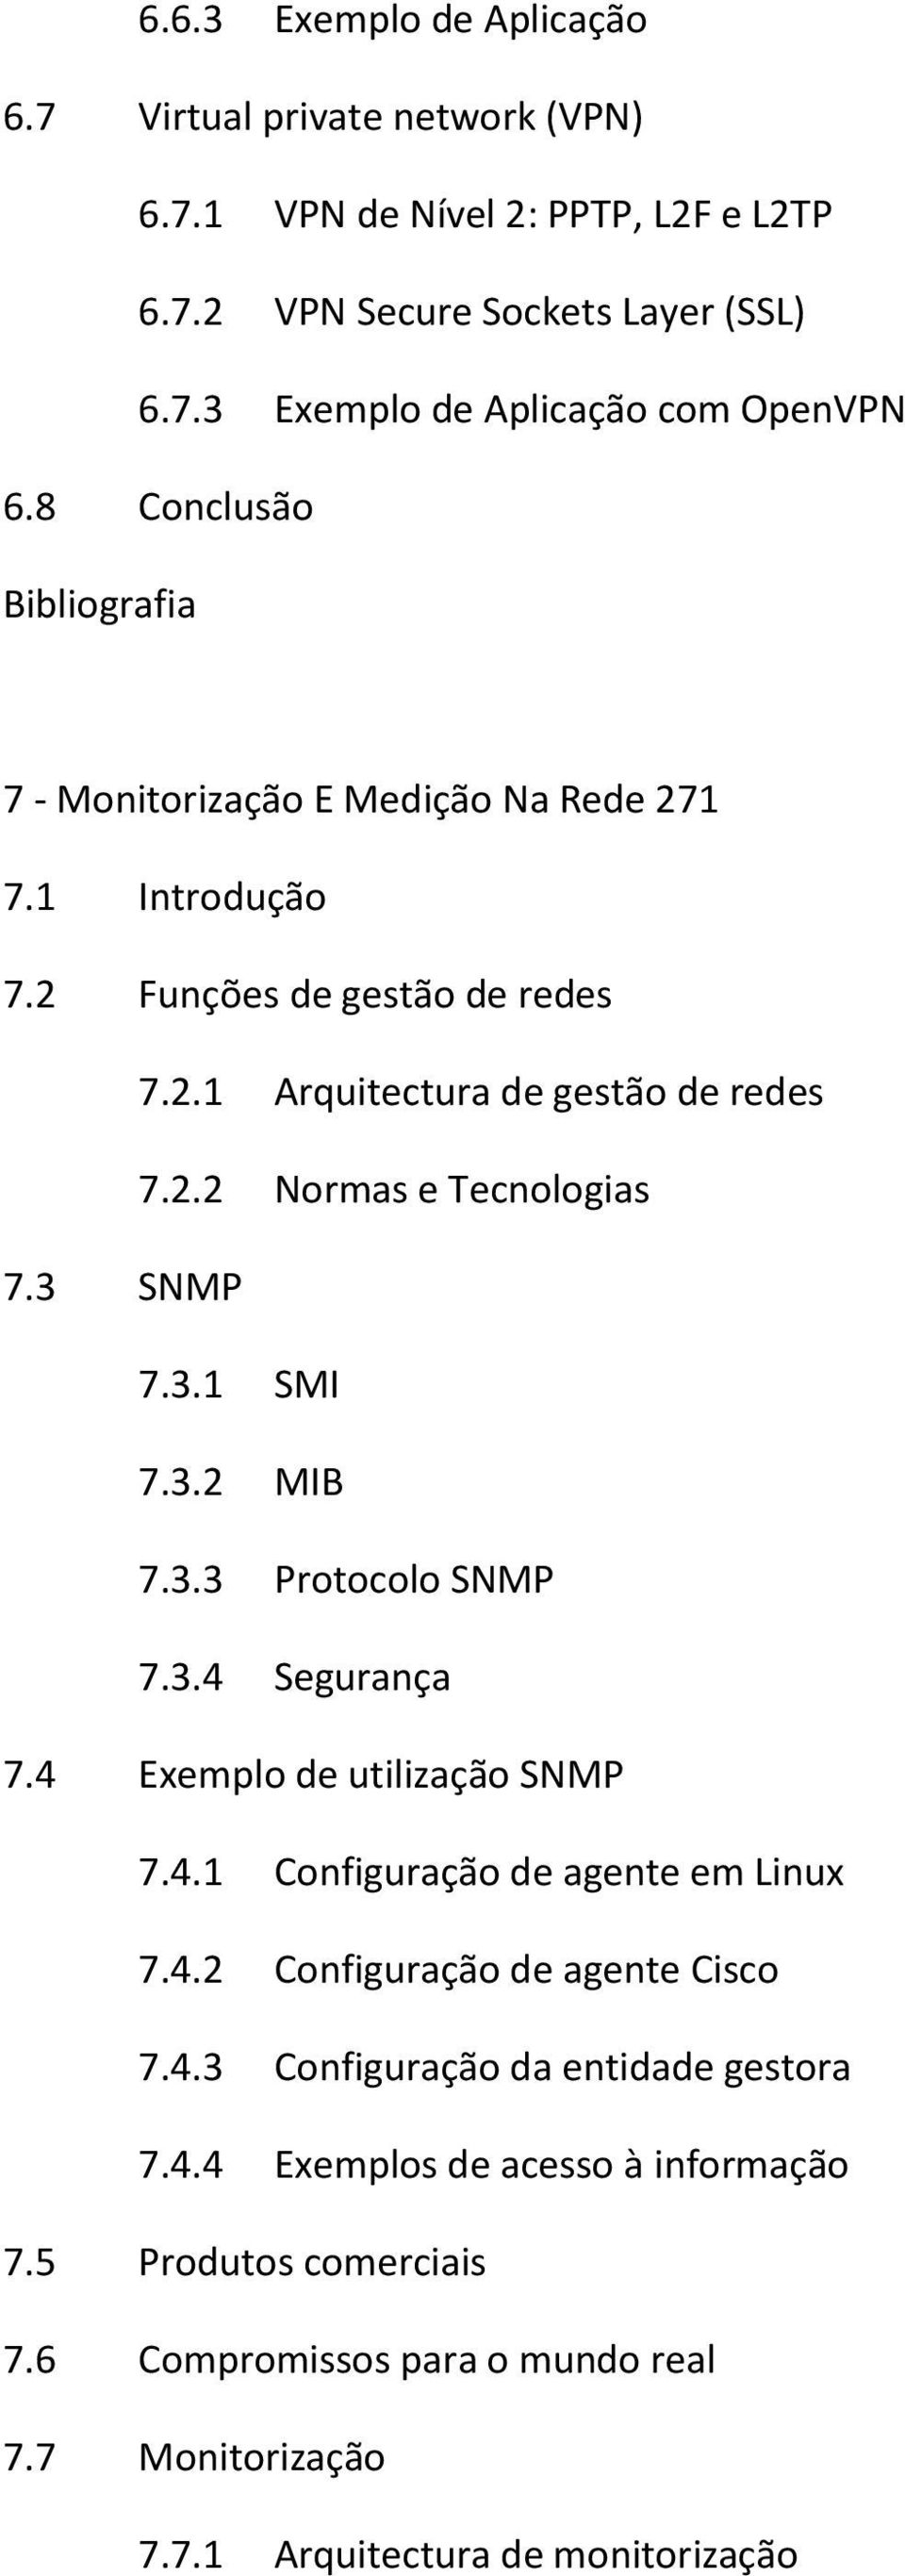 3.1 SMI 7.3.2 MIB 7.3.3 Protocolo SNMP 7.3.4 Segurança 7.4 Exemplo de utilização SNMP 7.4.1 Configuração de agente em Linux 7.4.2 Configuração de agente Cisco 7.4.3 Configuração da entidade gestora 7.